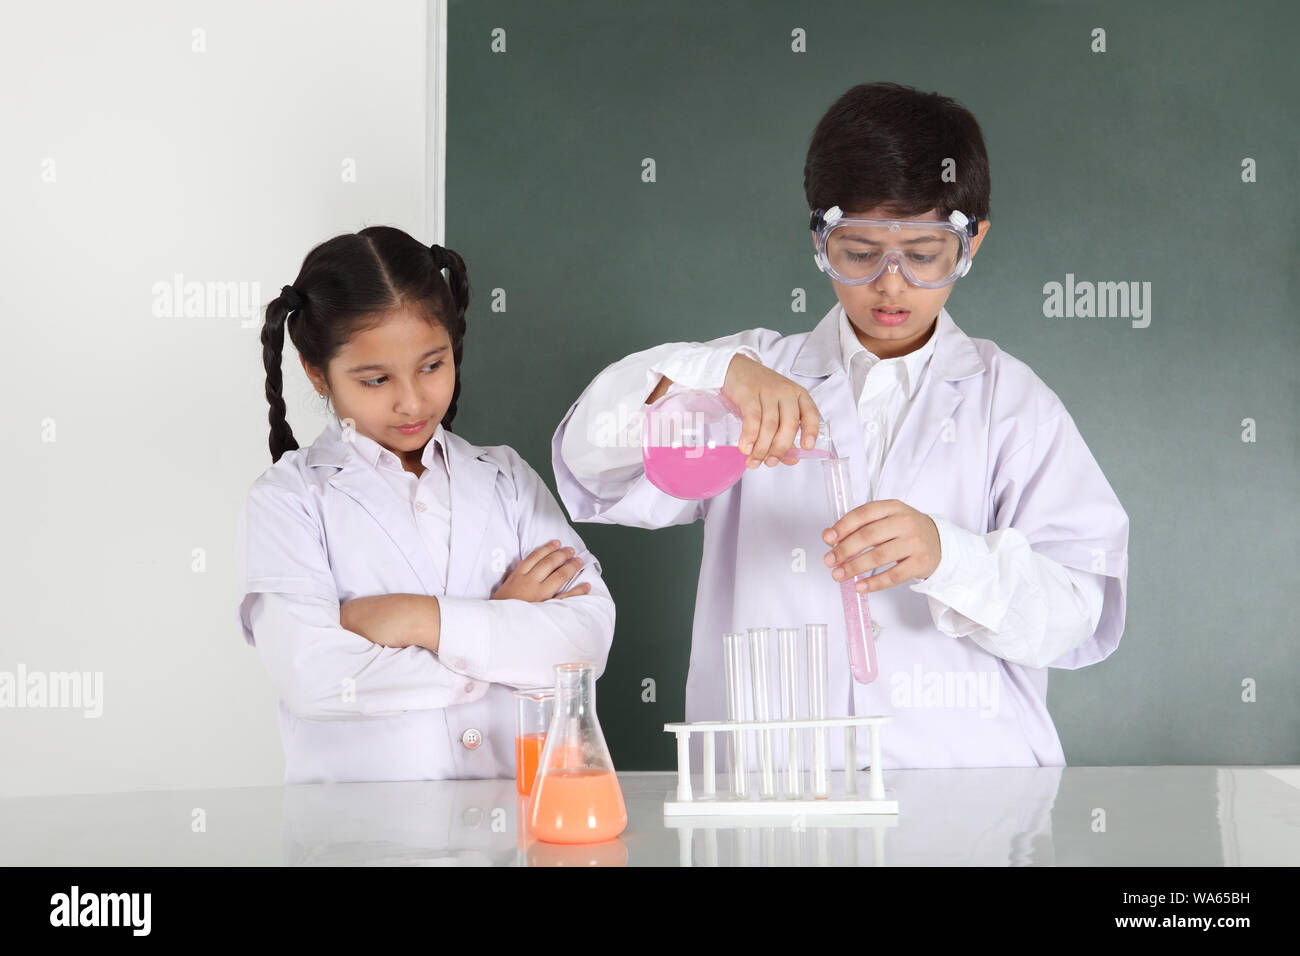 Los estudiantes de la escuela experimentan en un laboratorio de química Foto de stock